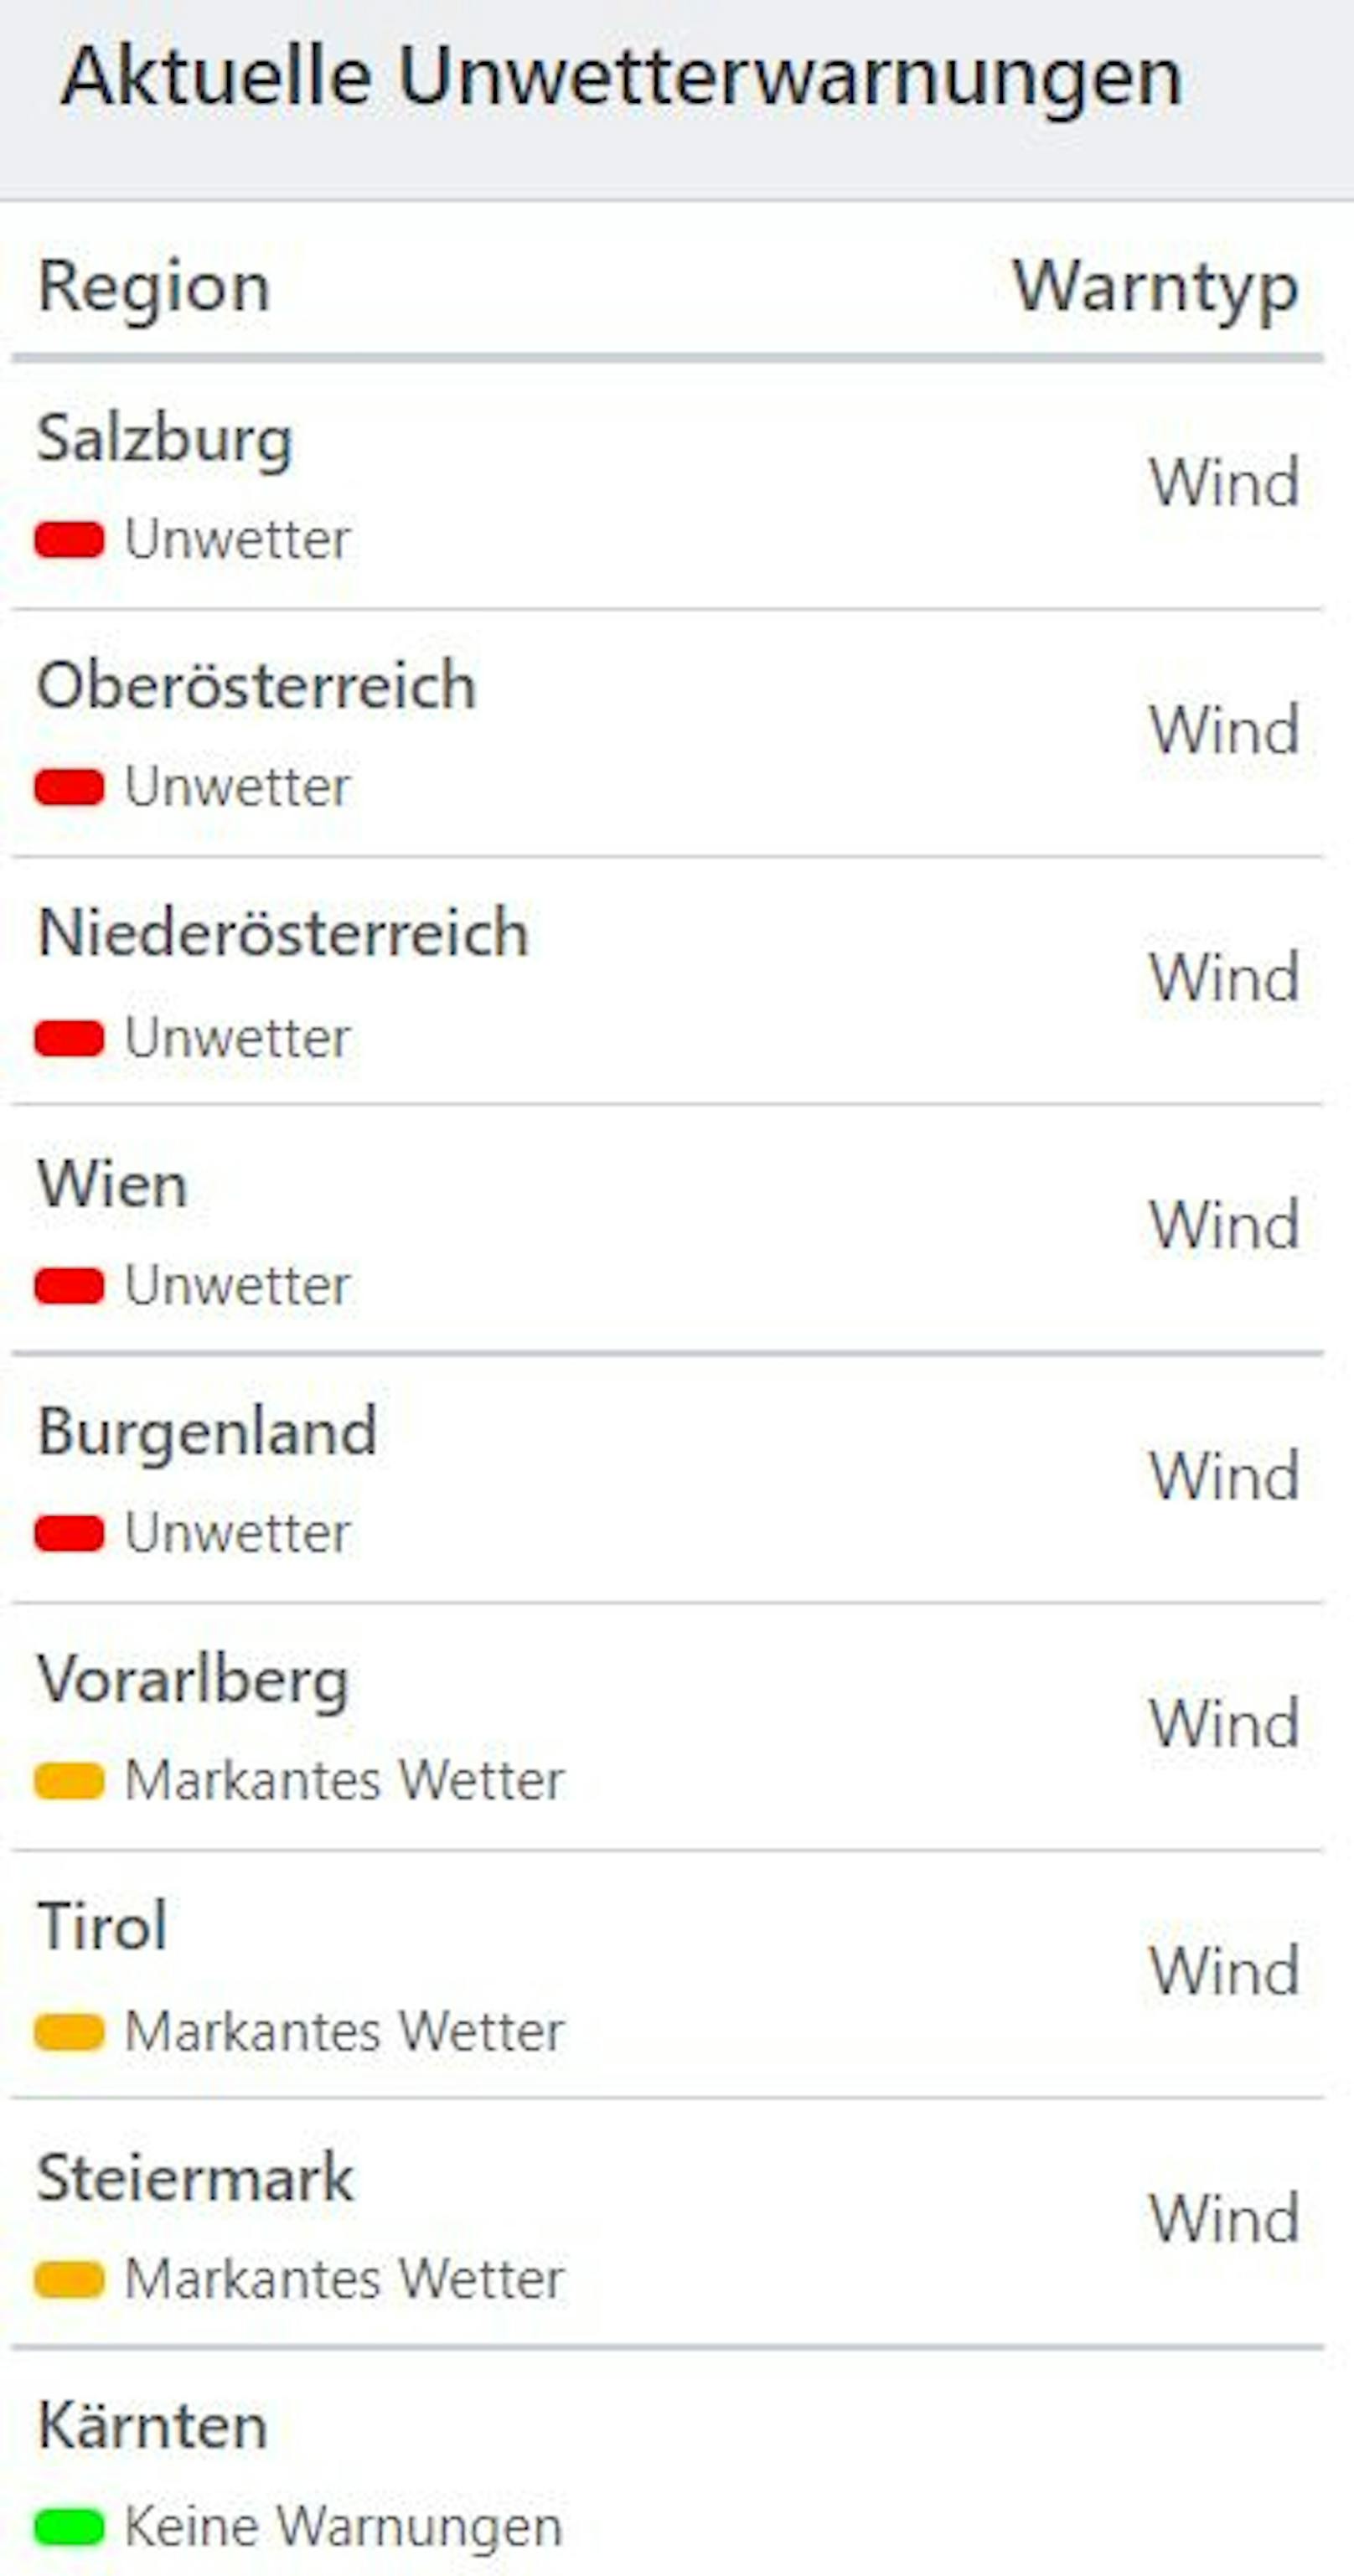 Aktuelle Unwetterwarnungen in Österreich